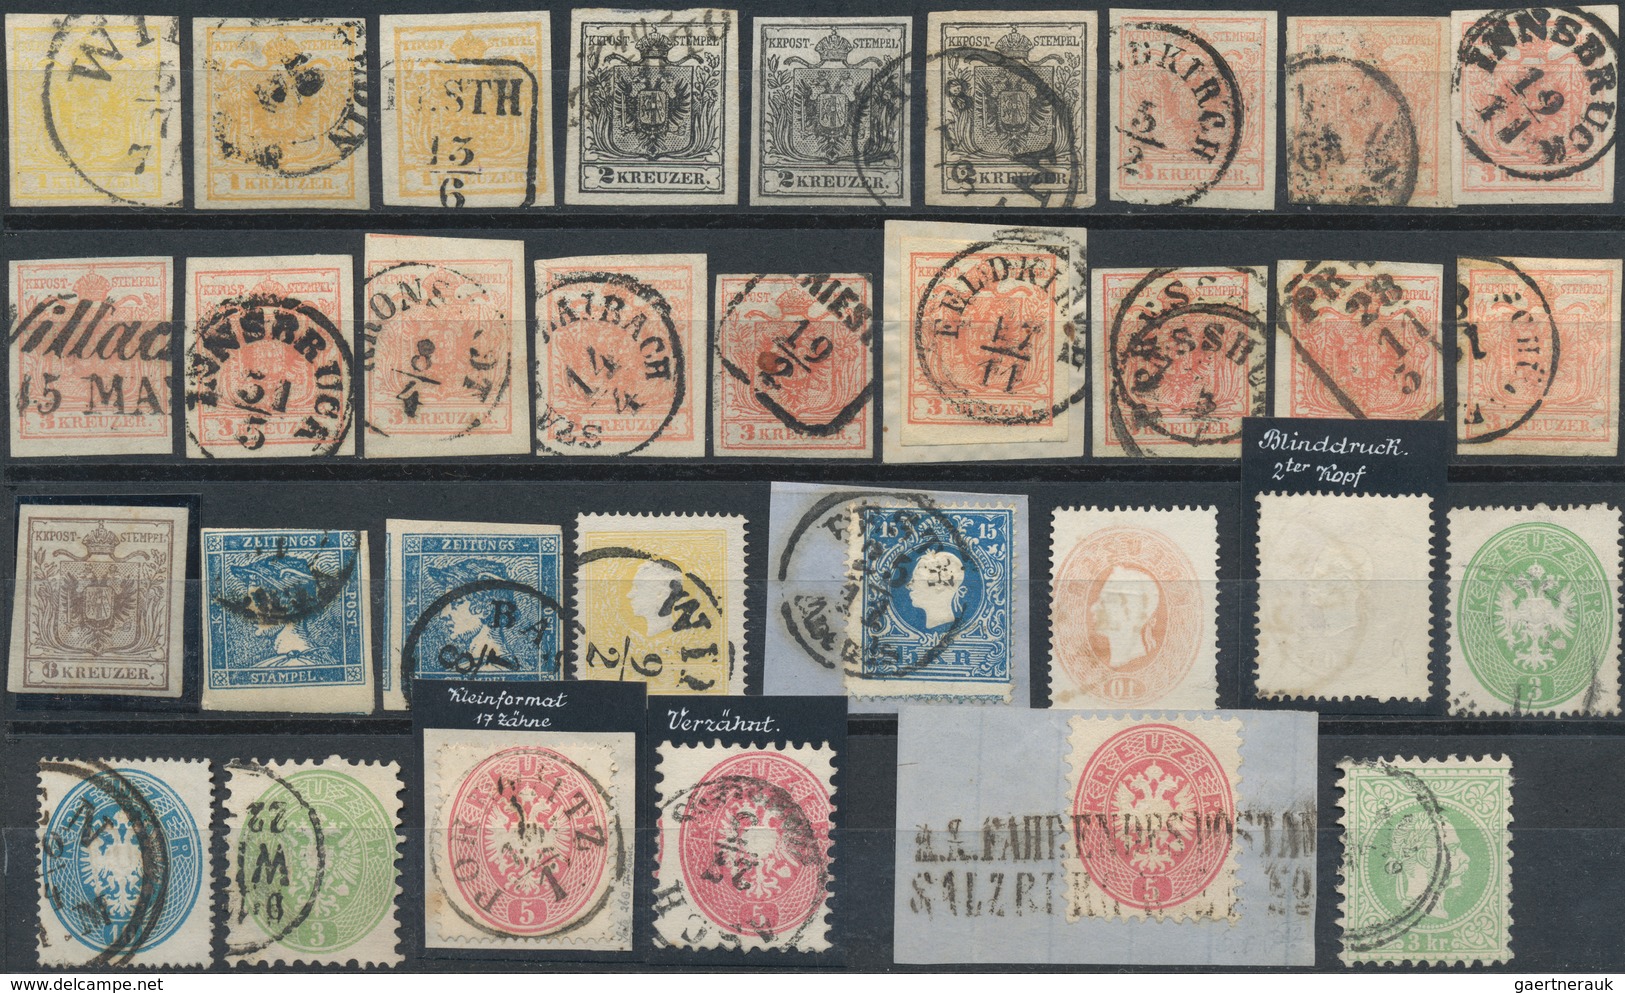 Österreich: 1850/1870 (ca.), Sauberes, Meist Gestempeltes Lot Von 32 Marken, Dabei MiNr. 1/2 (3), Mi - Collections